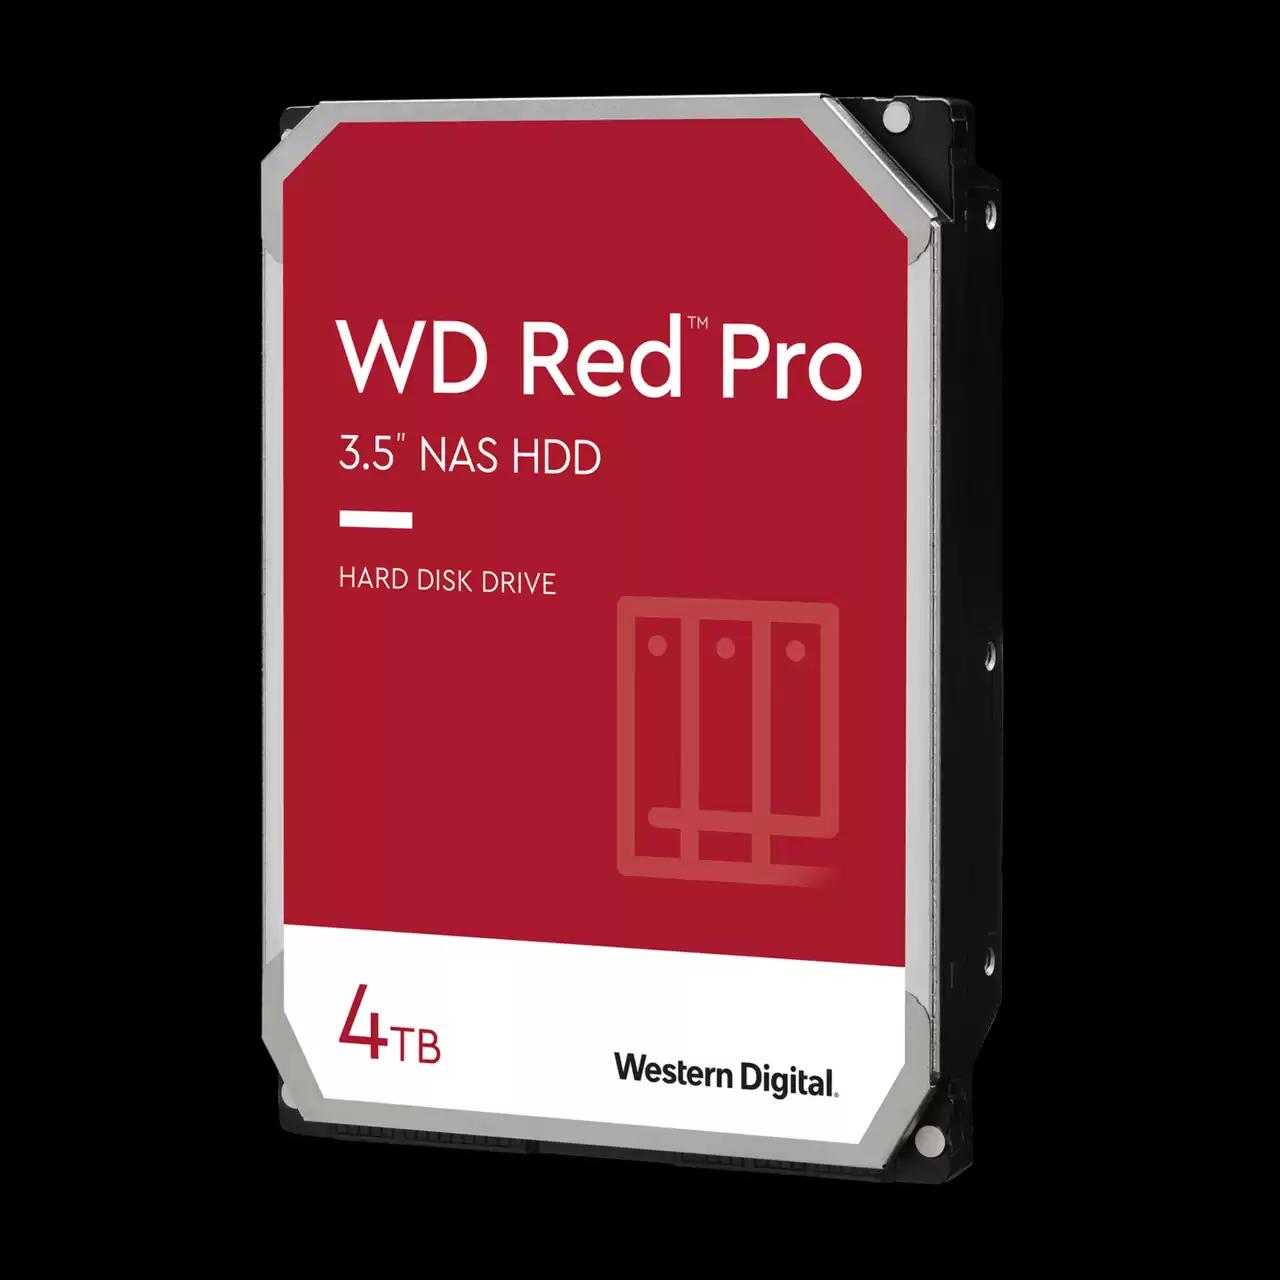 WESTERN DIGITAL WD RED PRO 4TB 256MB SATA 7200RPM